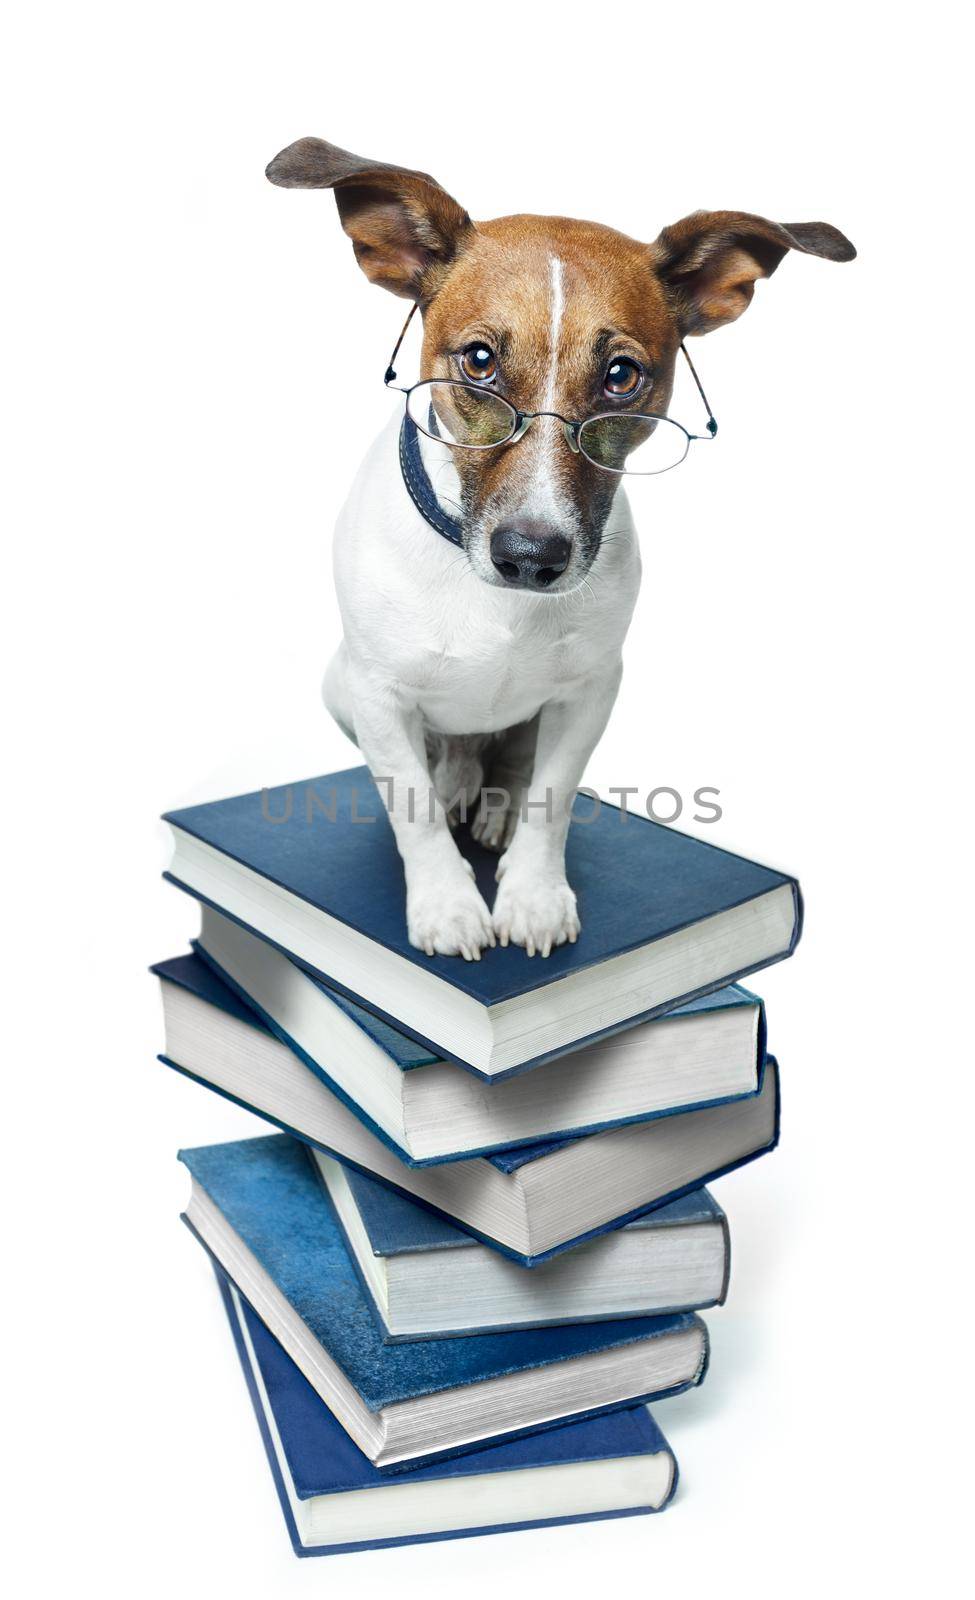 dog book stack by Brosch